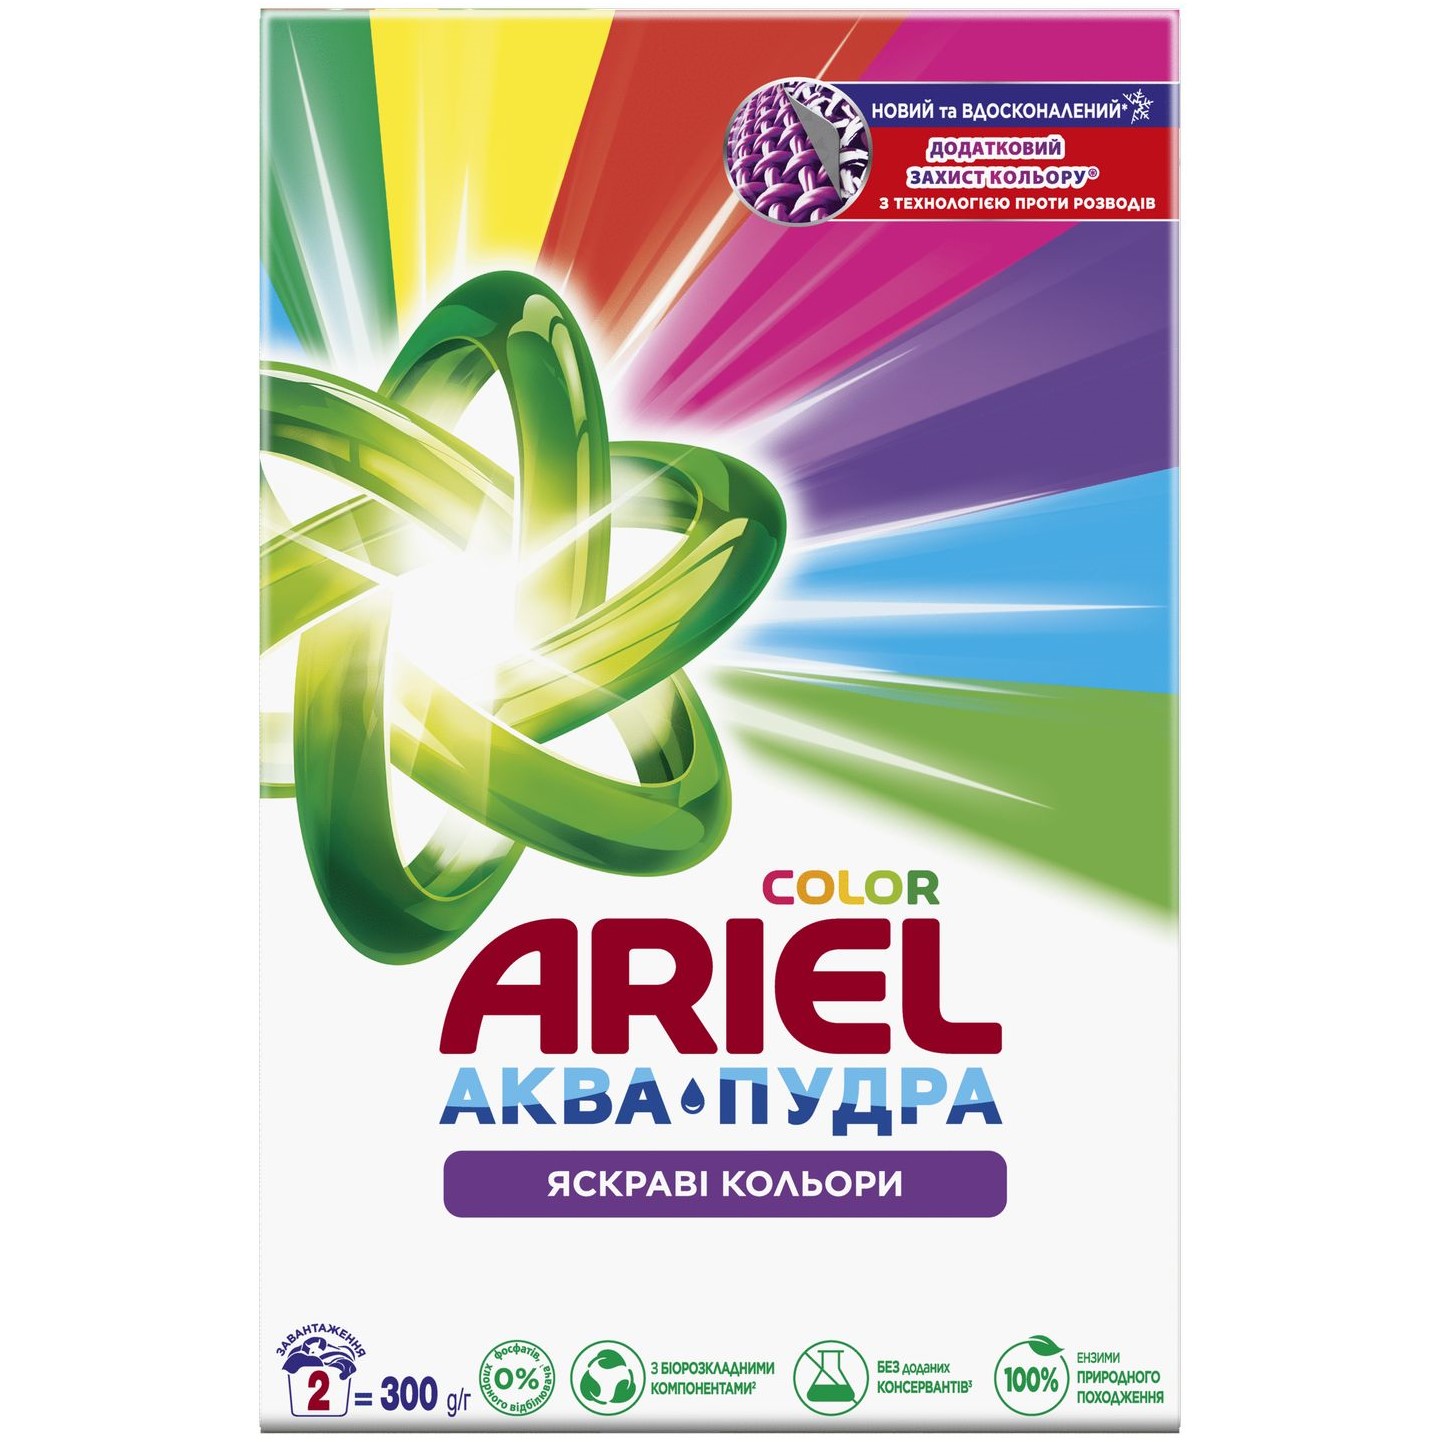 Пральний порошок Ariel Аква-Пудра Color Яскраві кольори 300 г - фото 1